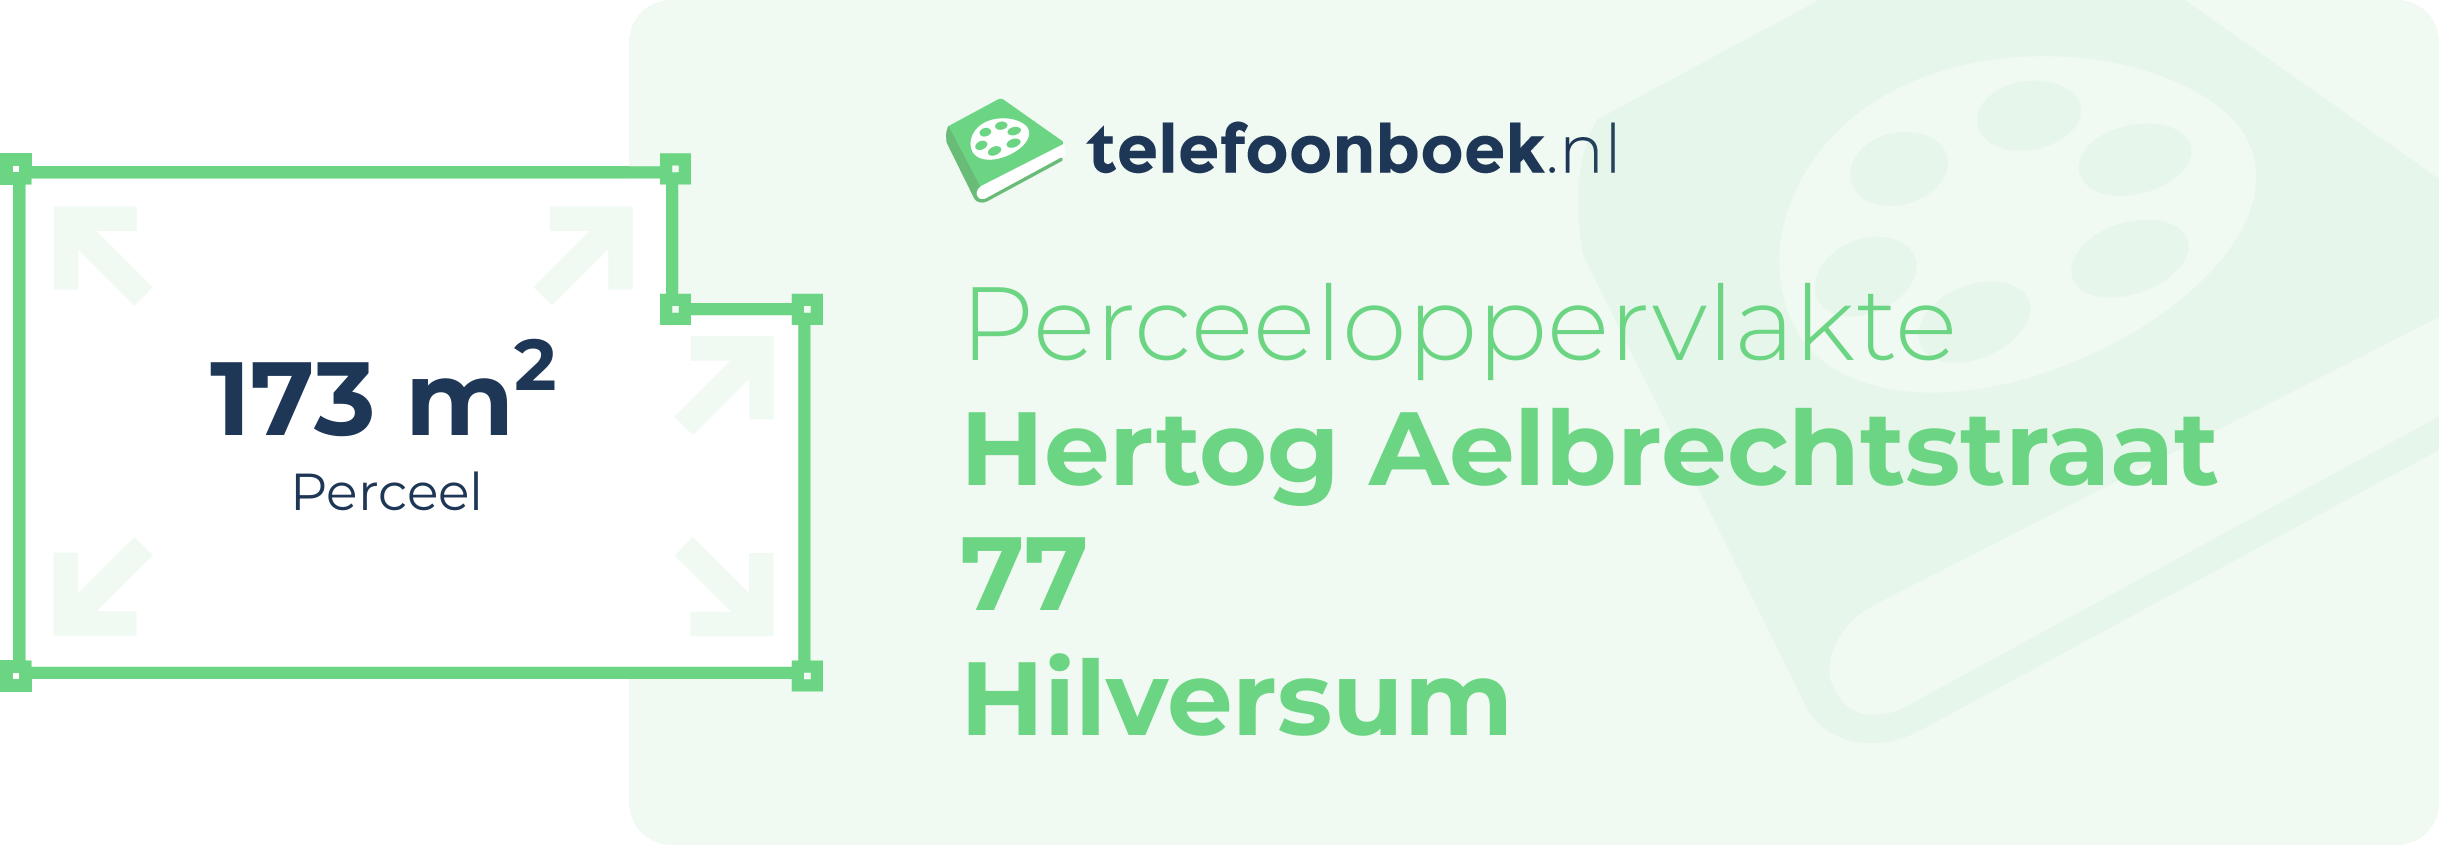 Perceeloppervlakte Hertog Aelbrechtstraat 77 Hilversum